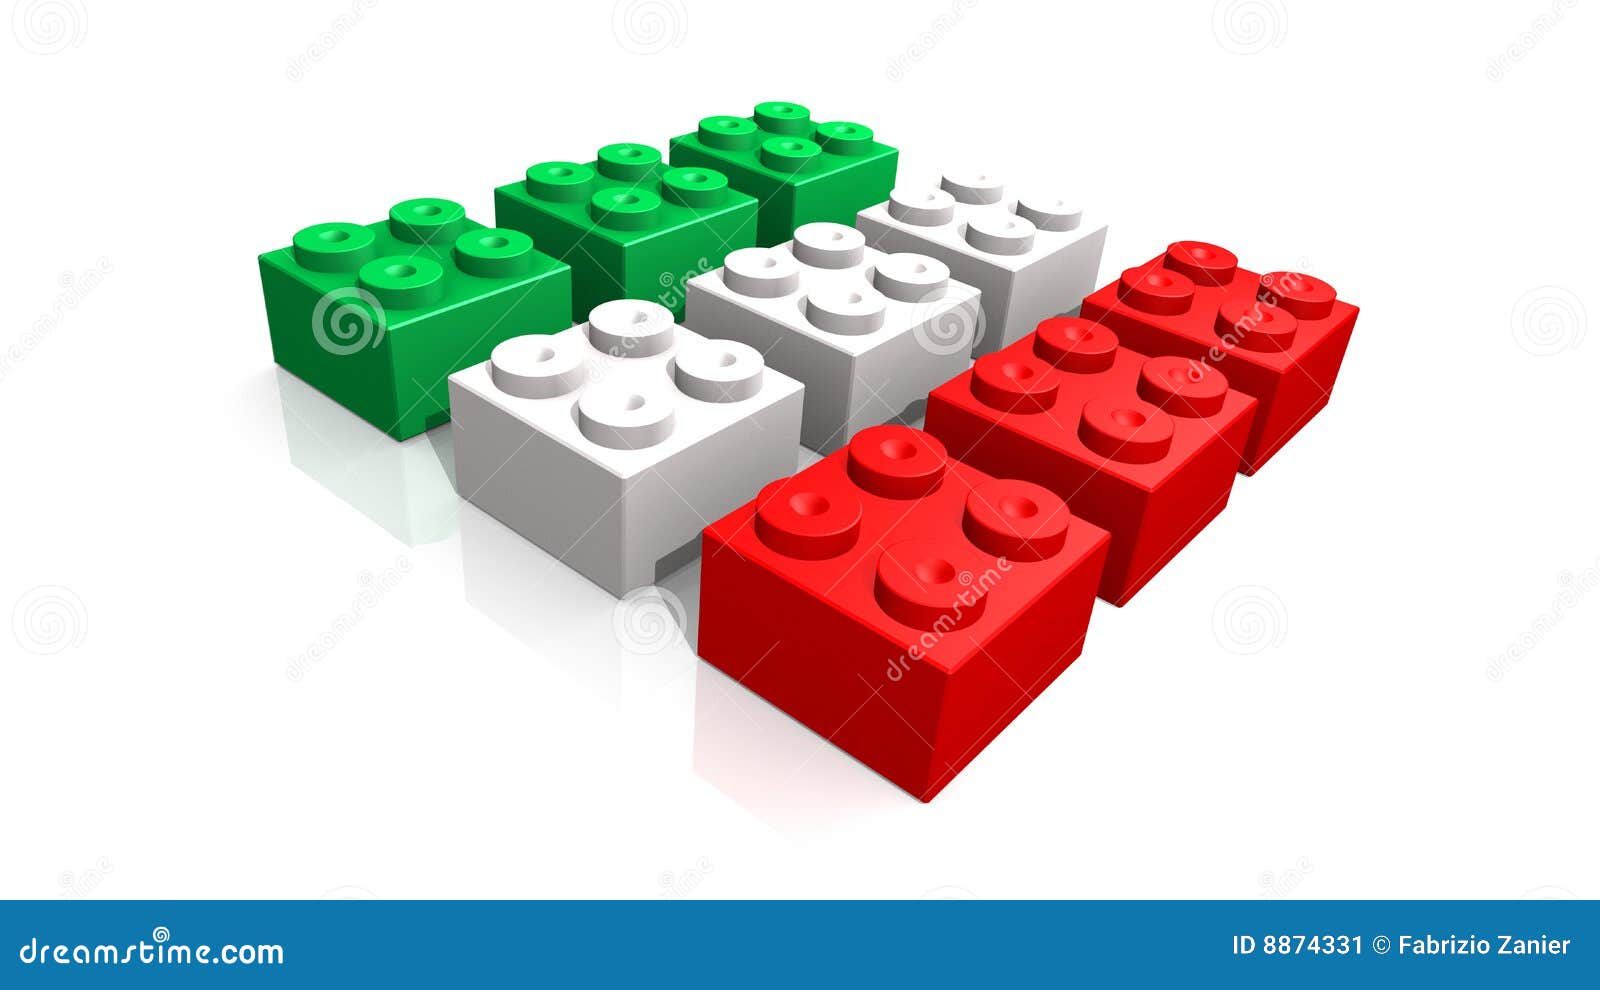 Italiaanse vlag die met blokken wordt gemaakt - gemaakt 3d